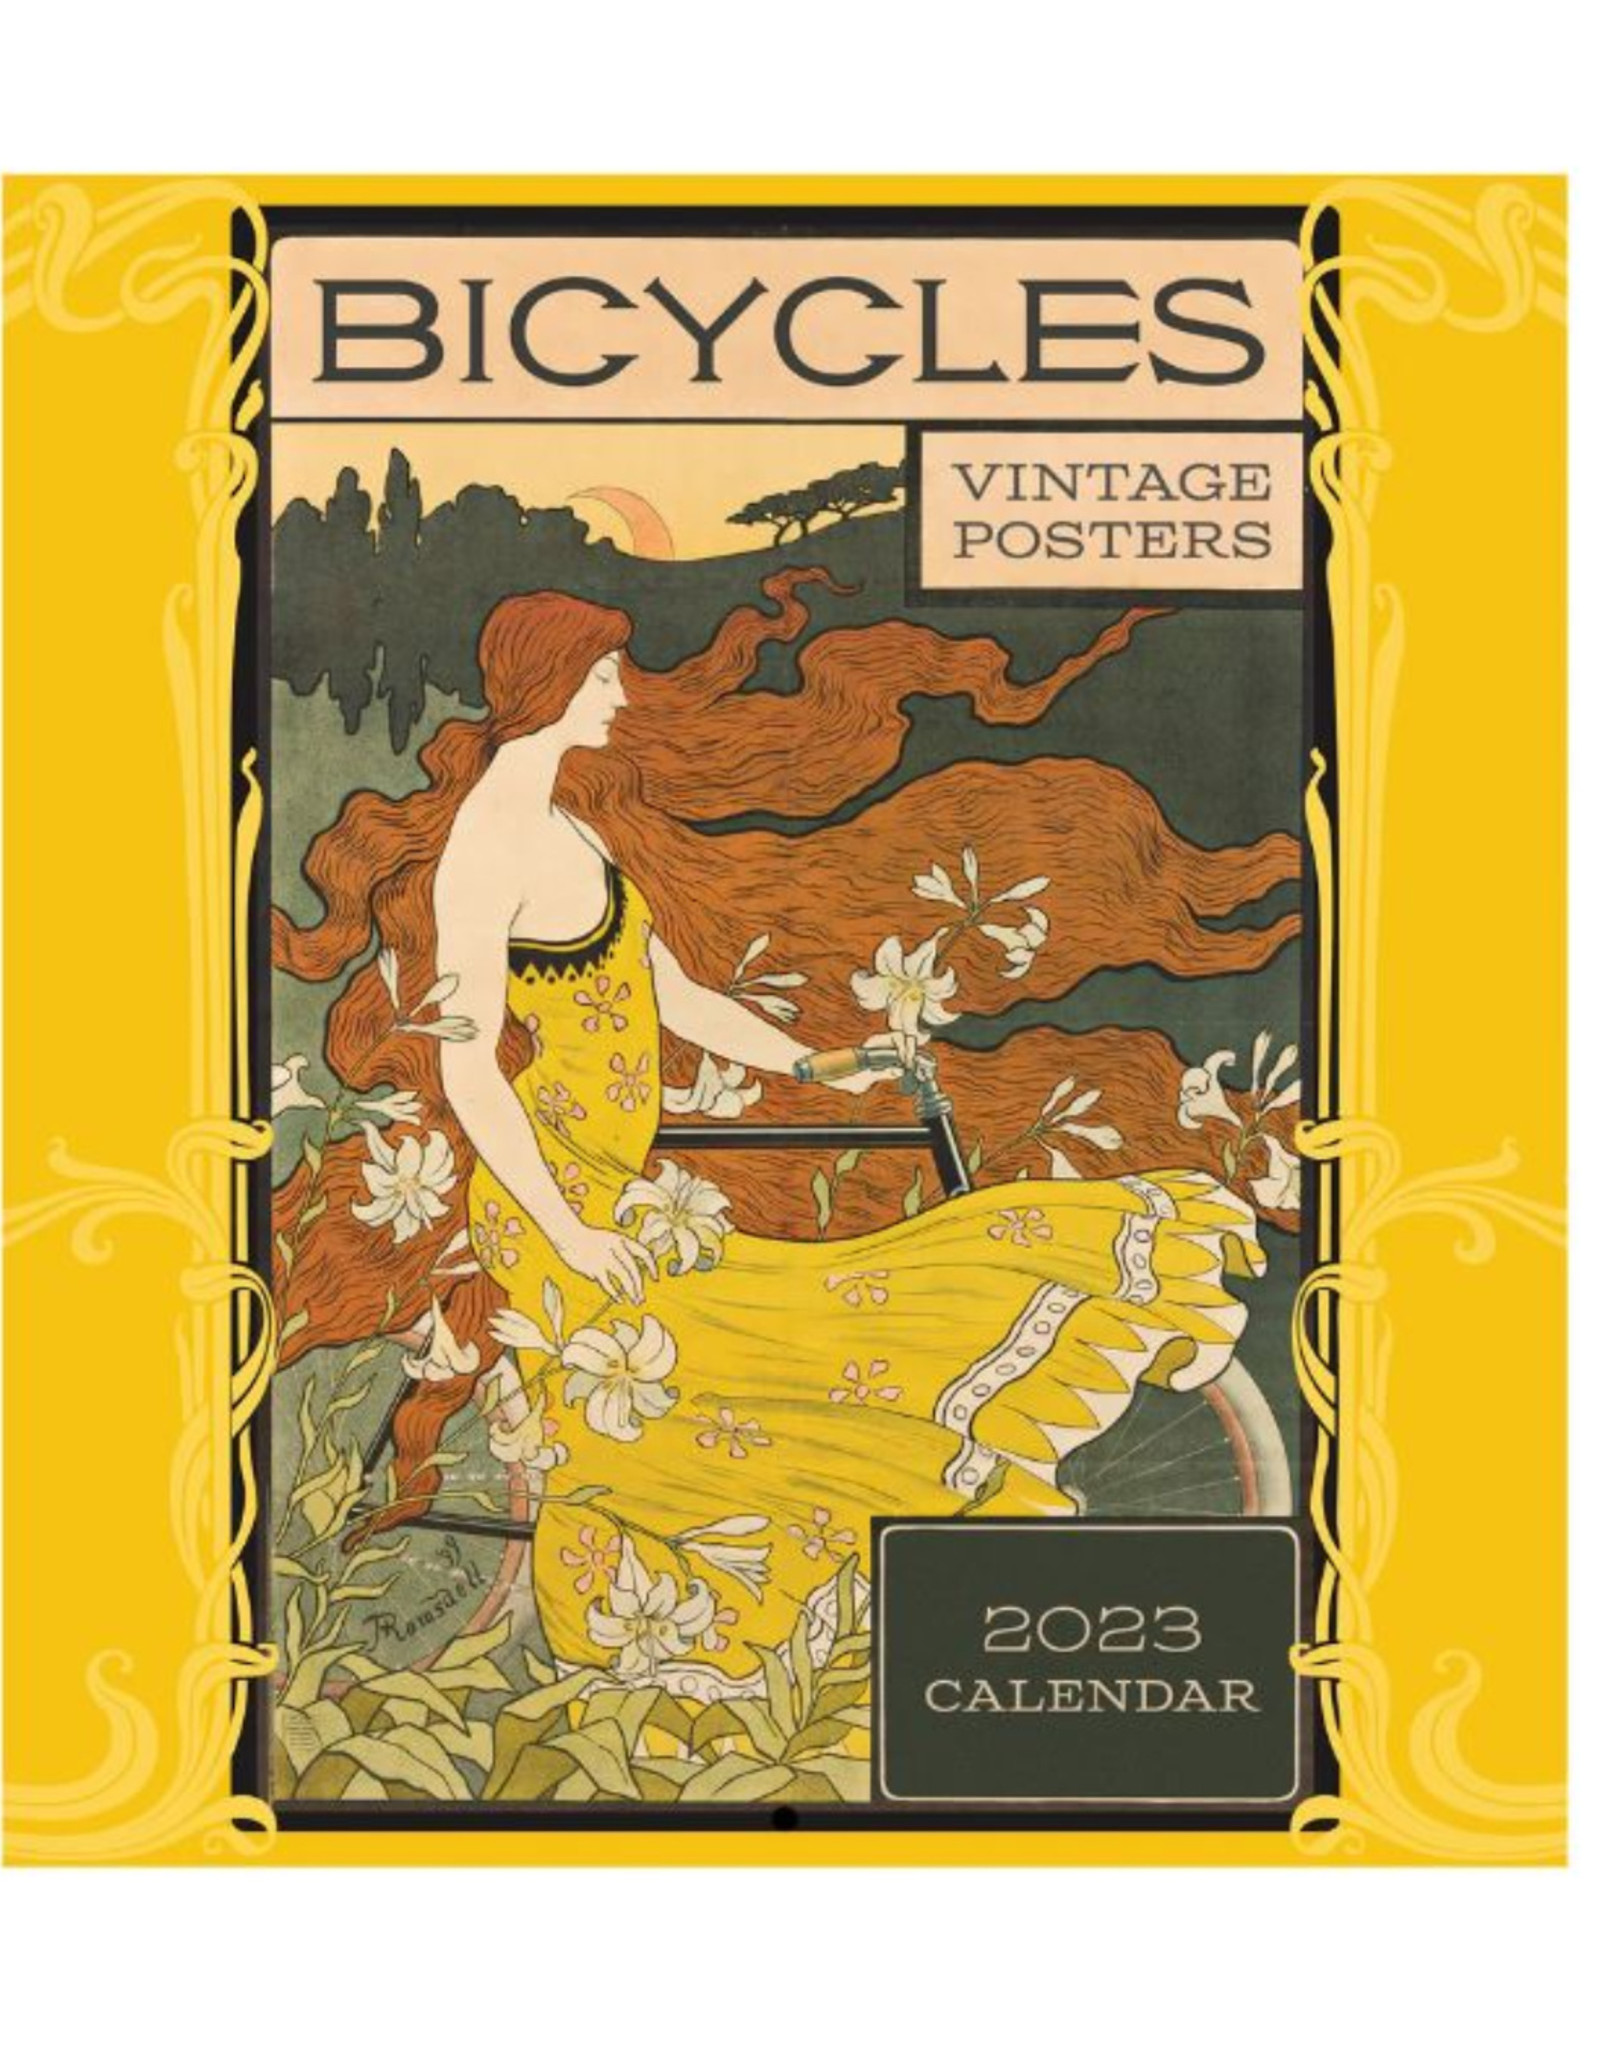 Vintage Bicycle Posters 2023 Calendar